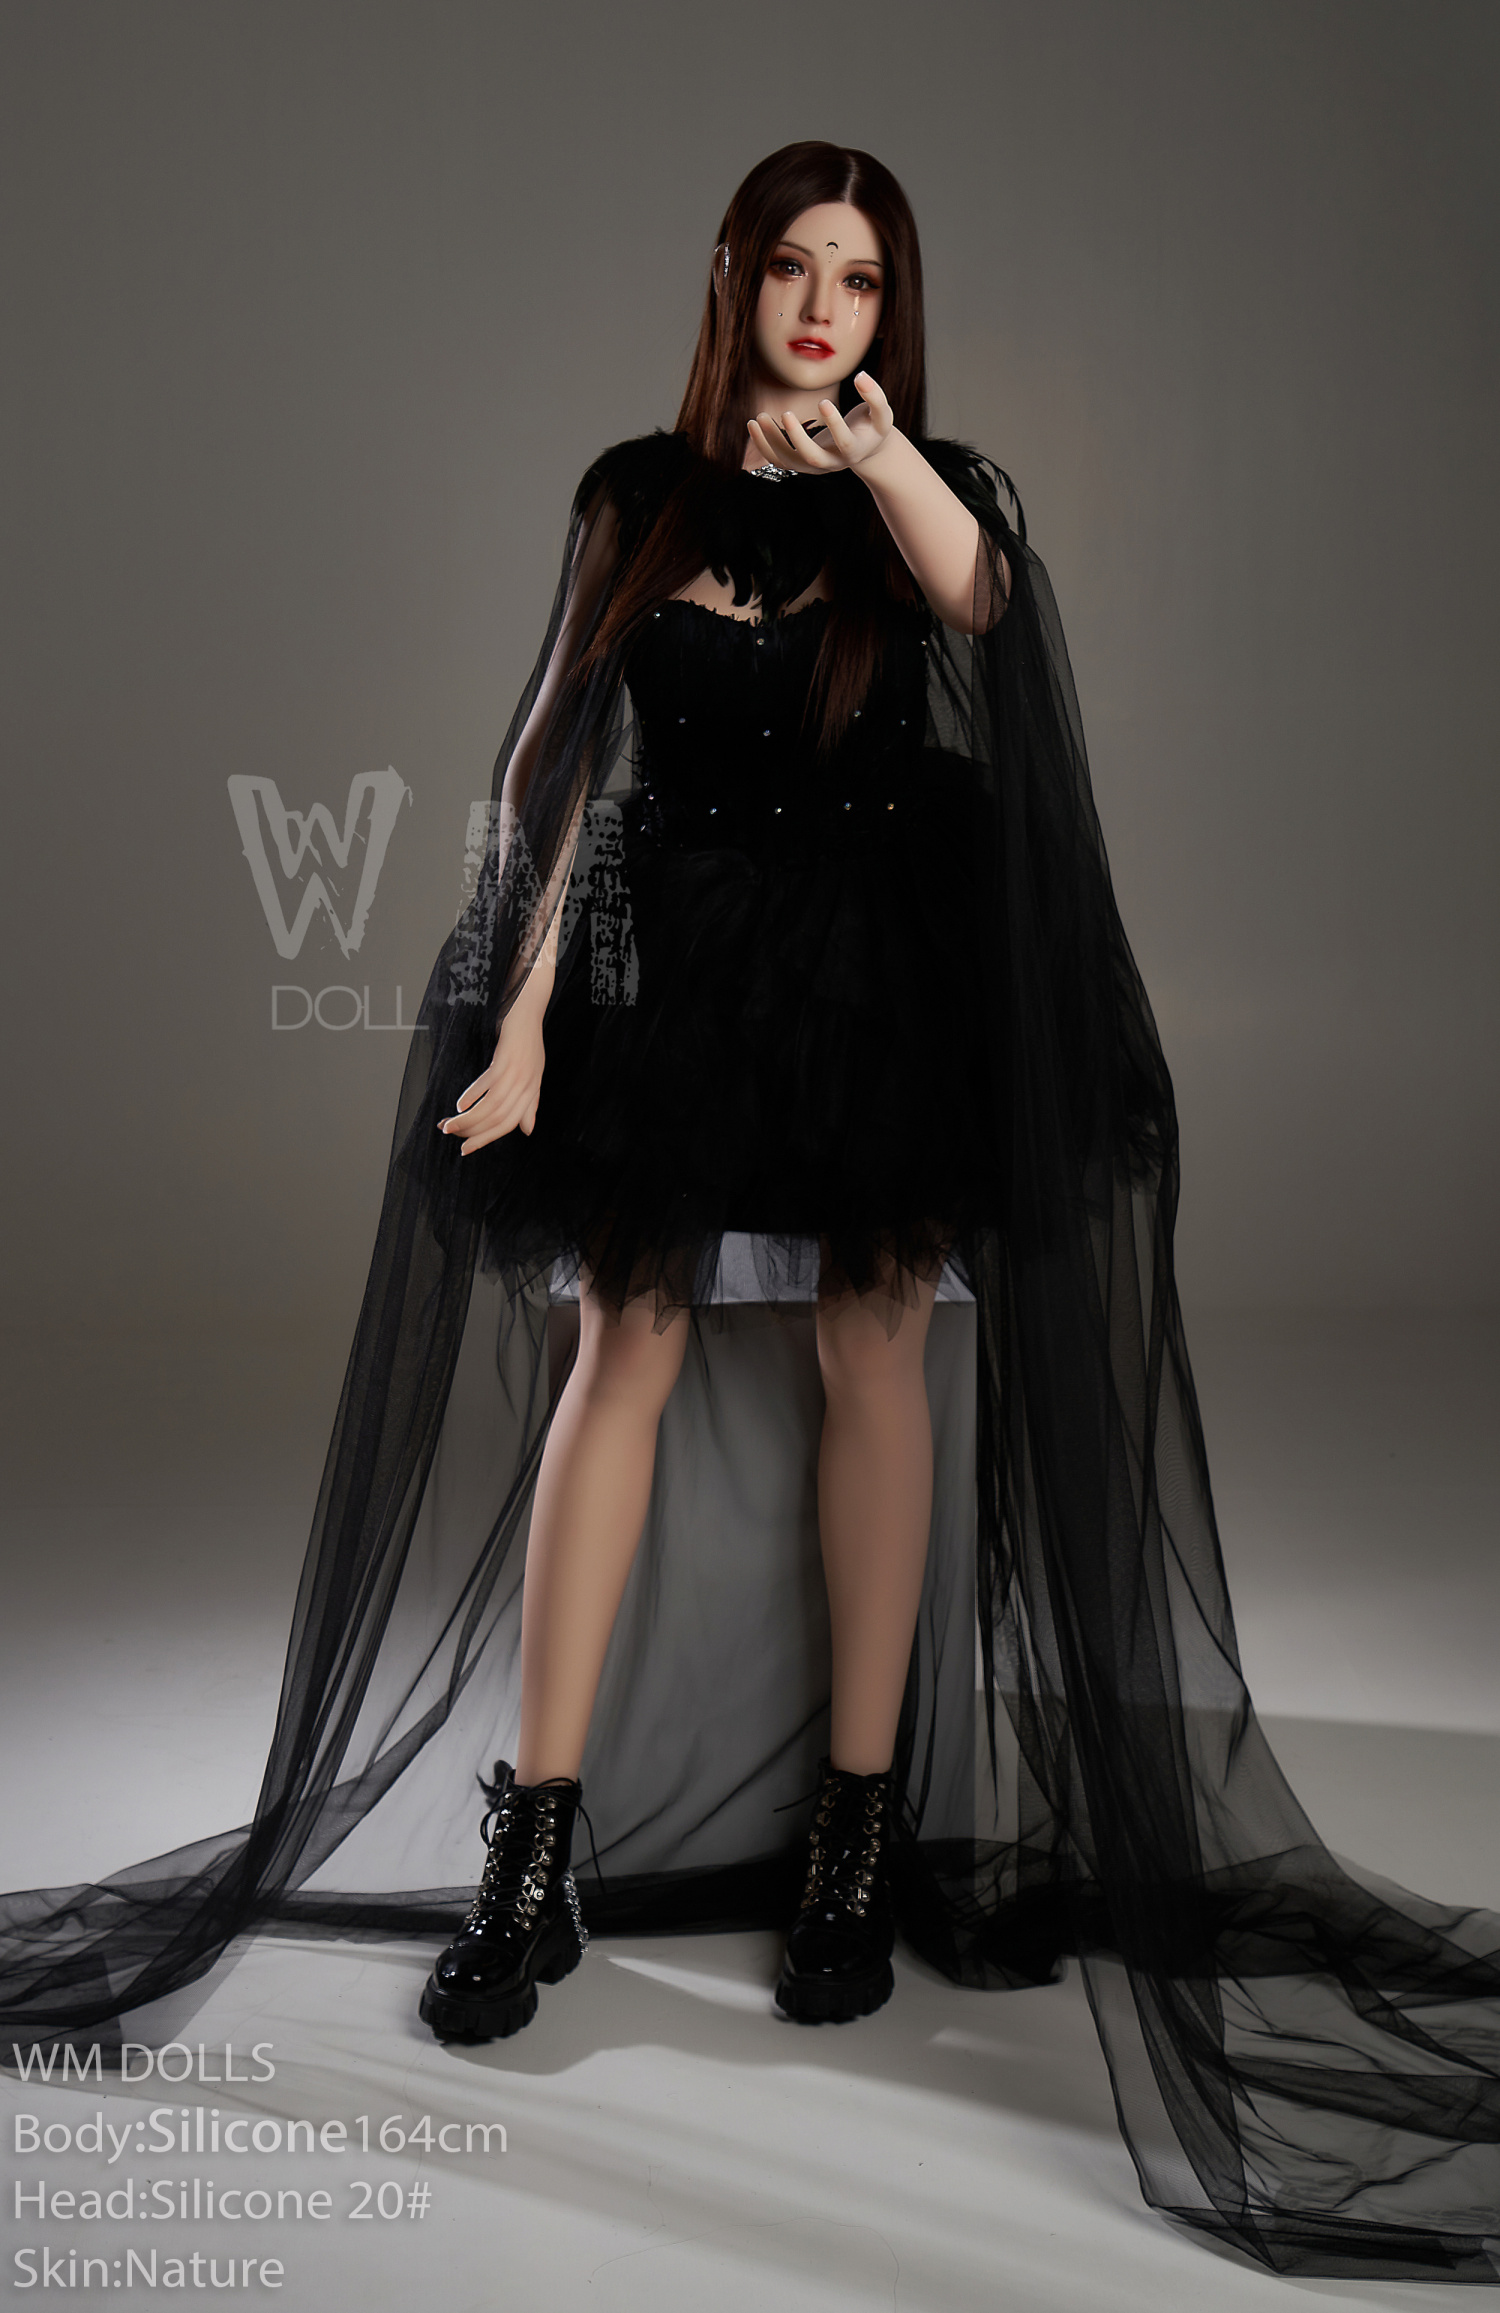  Mua Búp Bê Tình Dục Cao Cấp Mô Phỏng Giống Người Thật 164 Cm – WM Dolls D - Monika hàng mới về